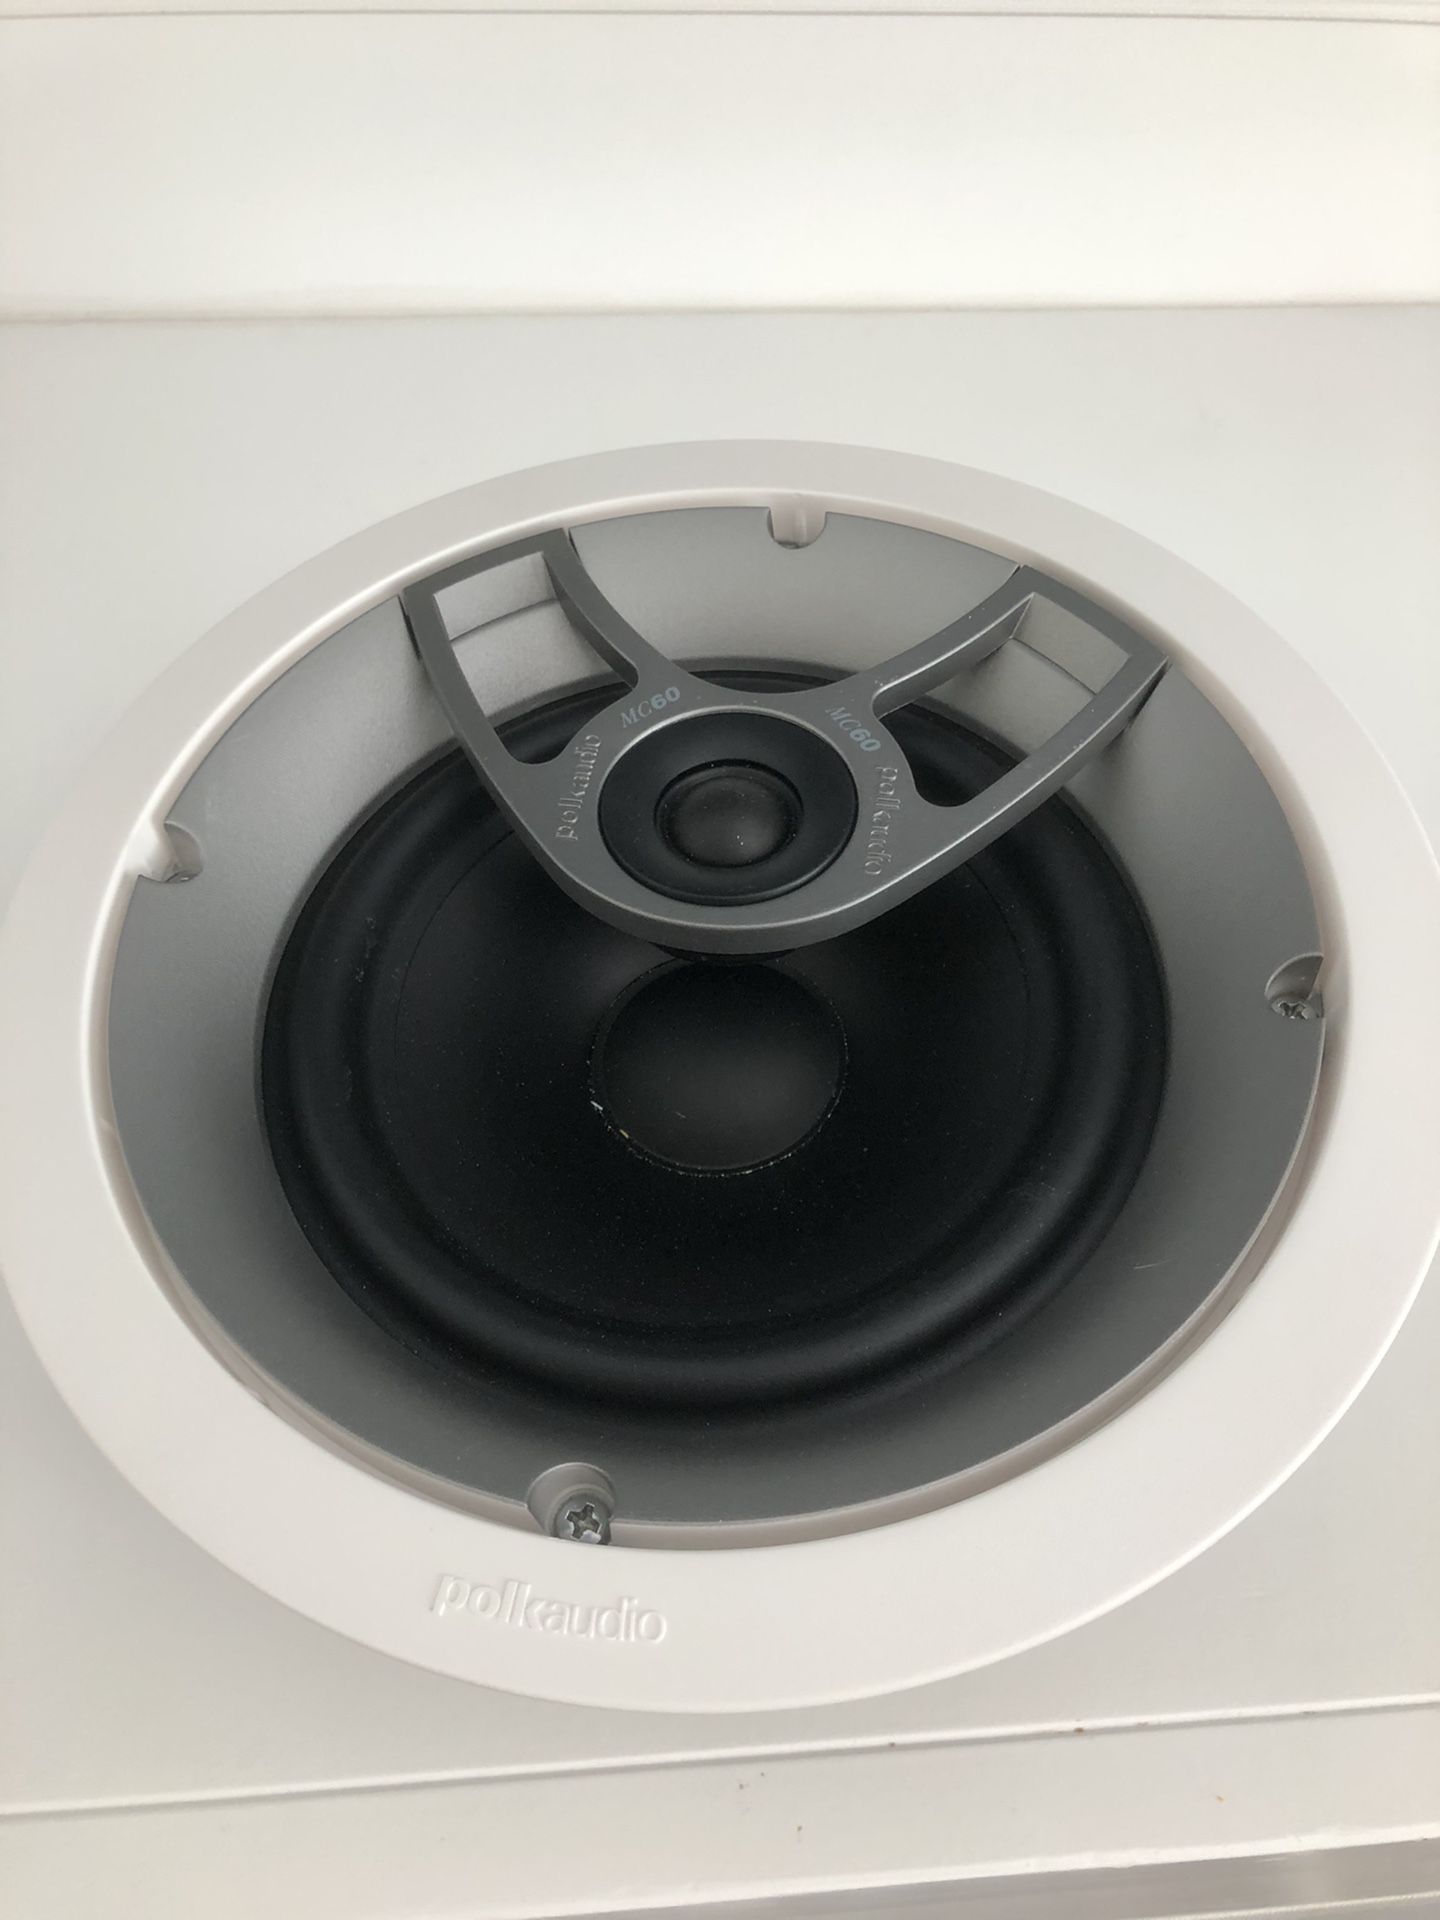 Polk Audio in-ceiling speaker